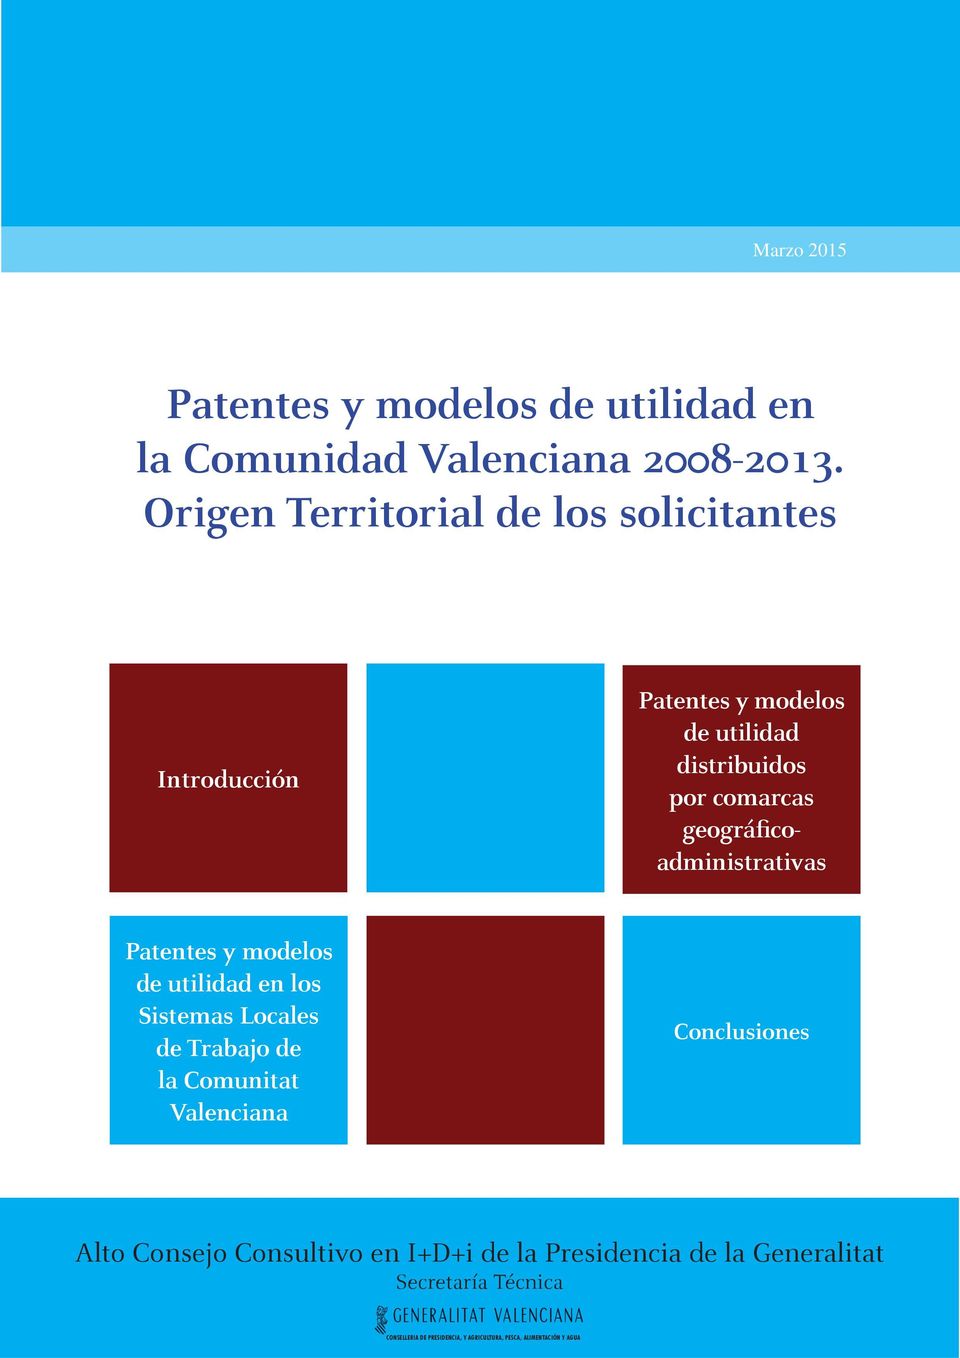 Origen Territorial de los solicitantes Introducción Patentes y modelos de utilidad distribuidos por comarcas geográficoadministrativas